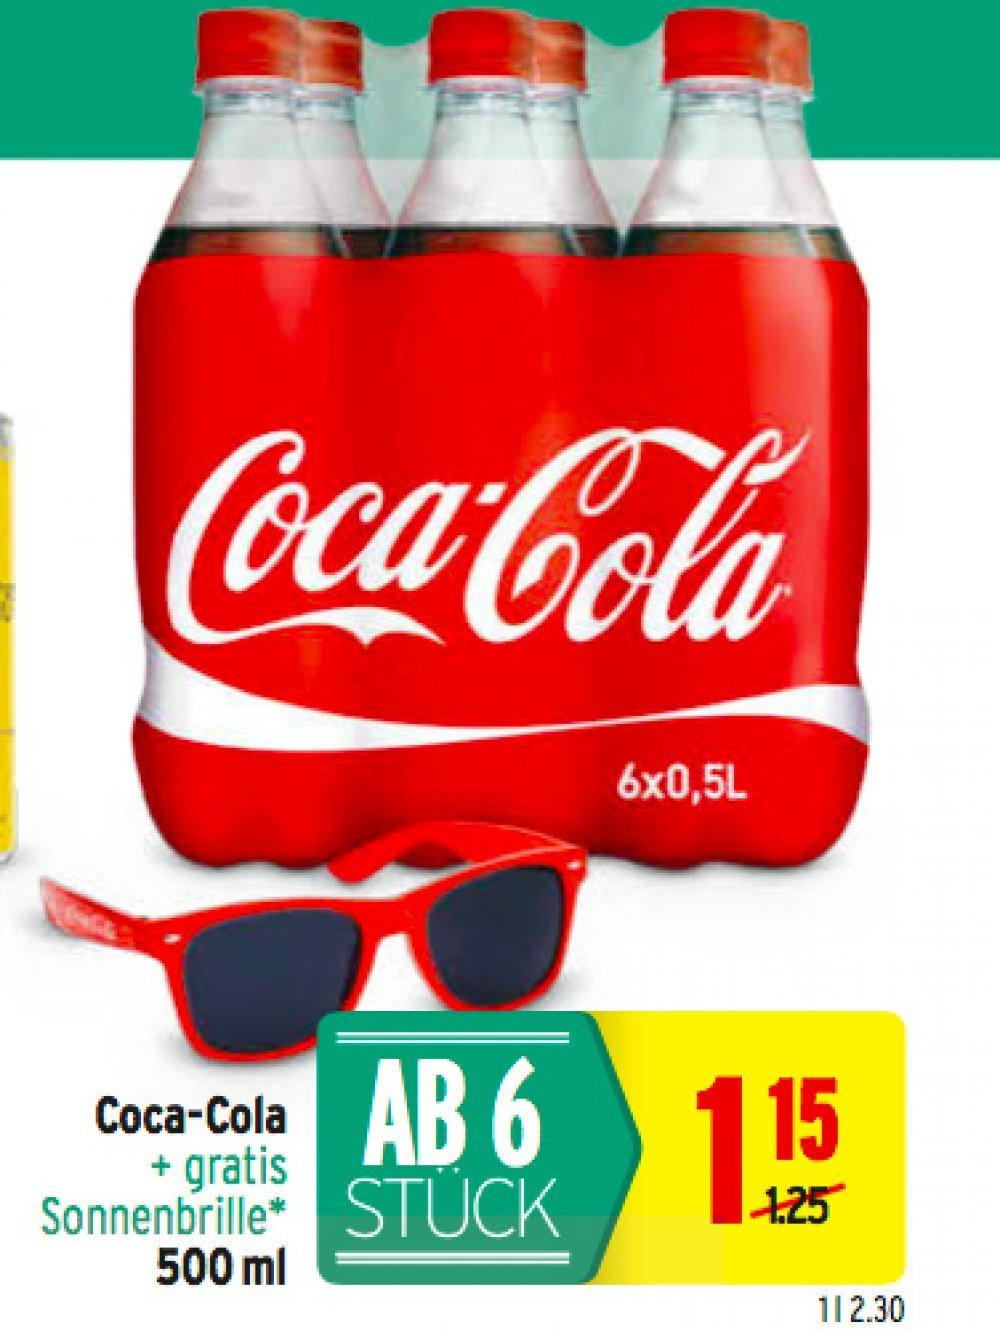 Coca-Cola + gratis Sonnenbrille nur € 1,15 statt € 1,25 ...